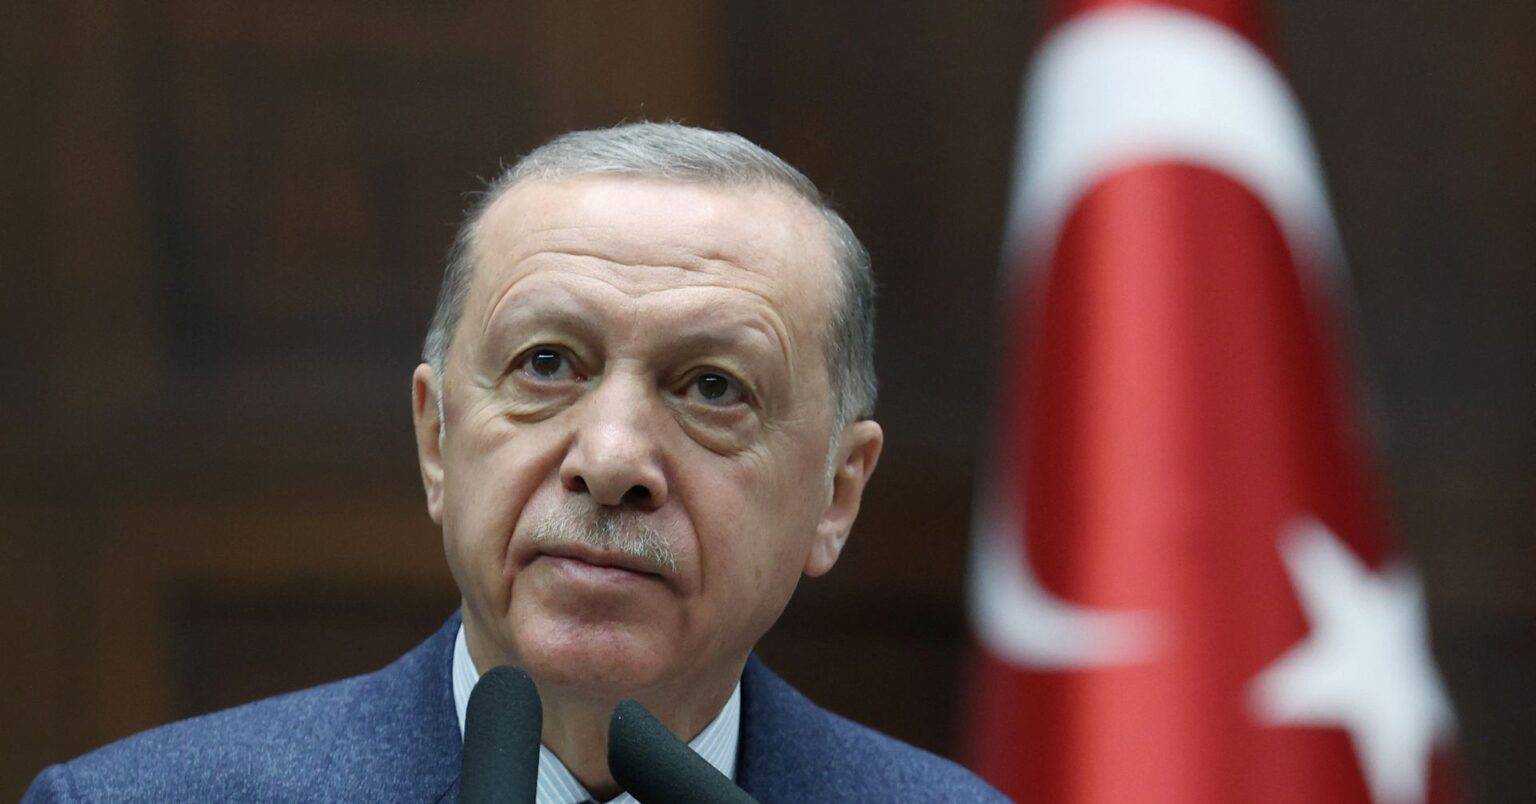 Erdogan says West ignores law when ‘Muslim blood spilled’